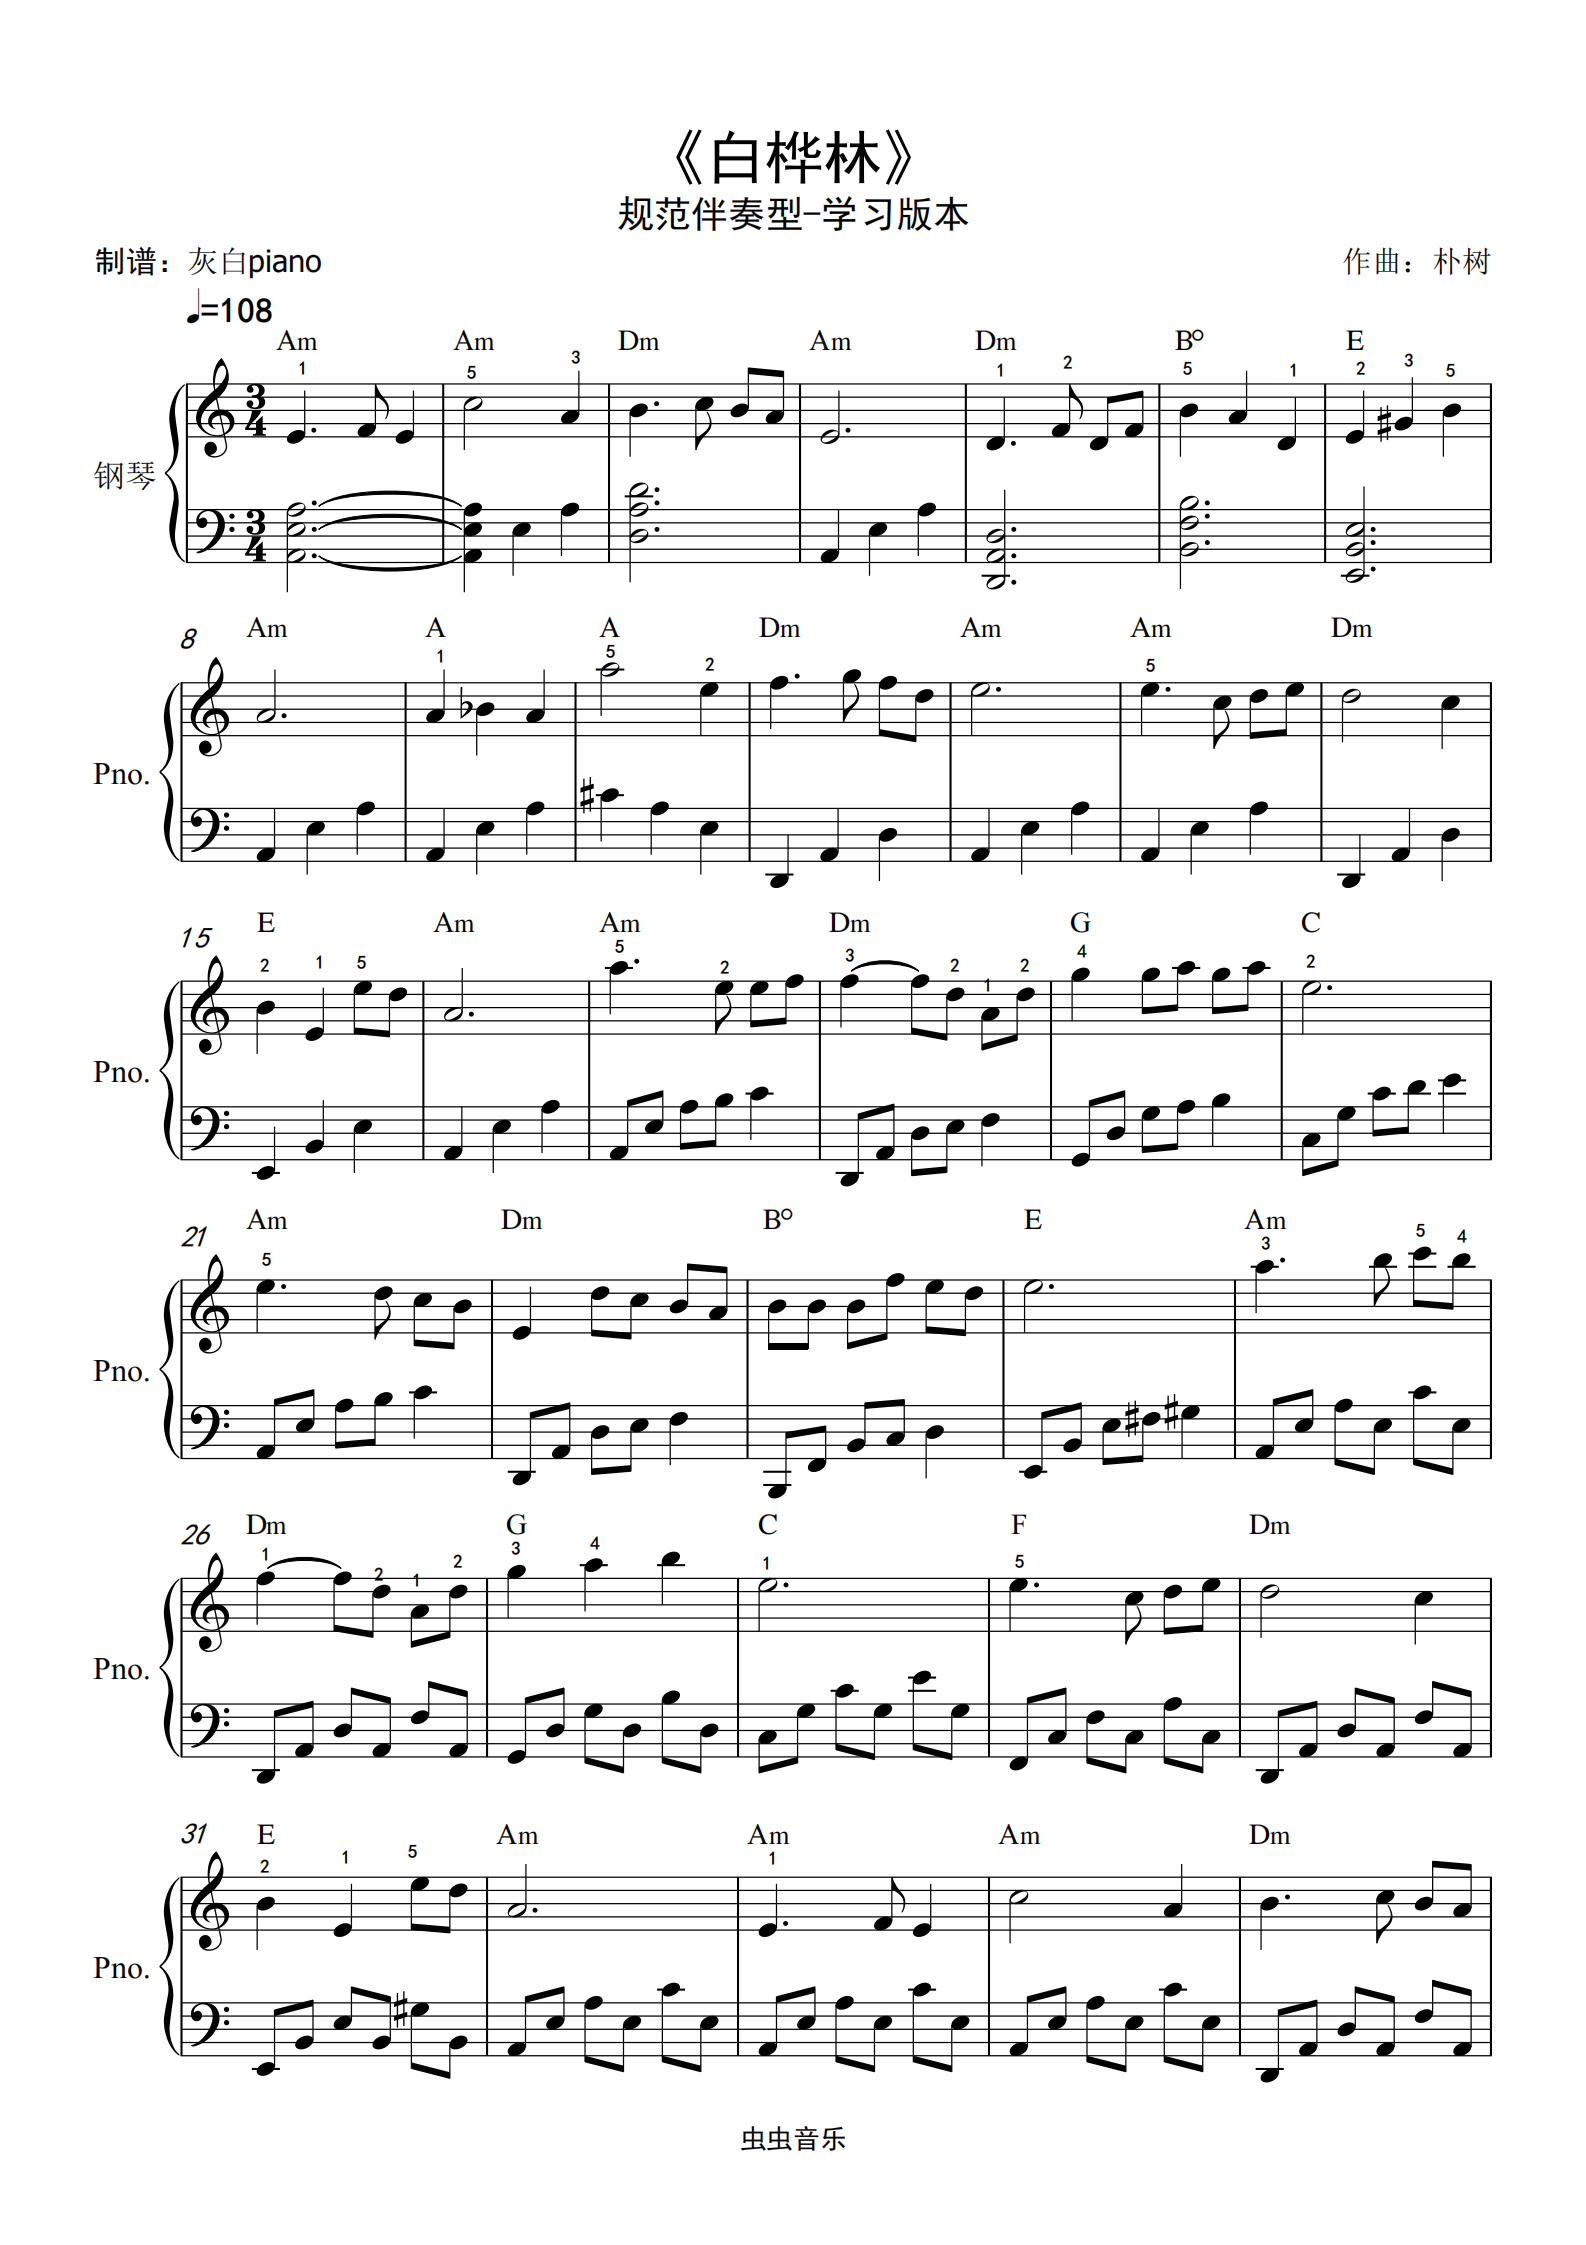 白桦林-规范即兴伴奏型-自学版-灰白piano钢琴谱,白桦林-规范即兴伴奏